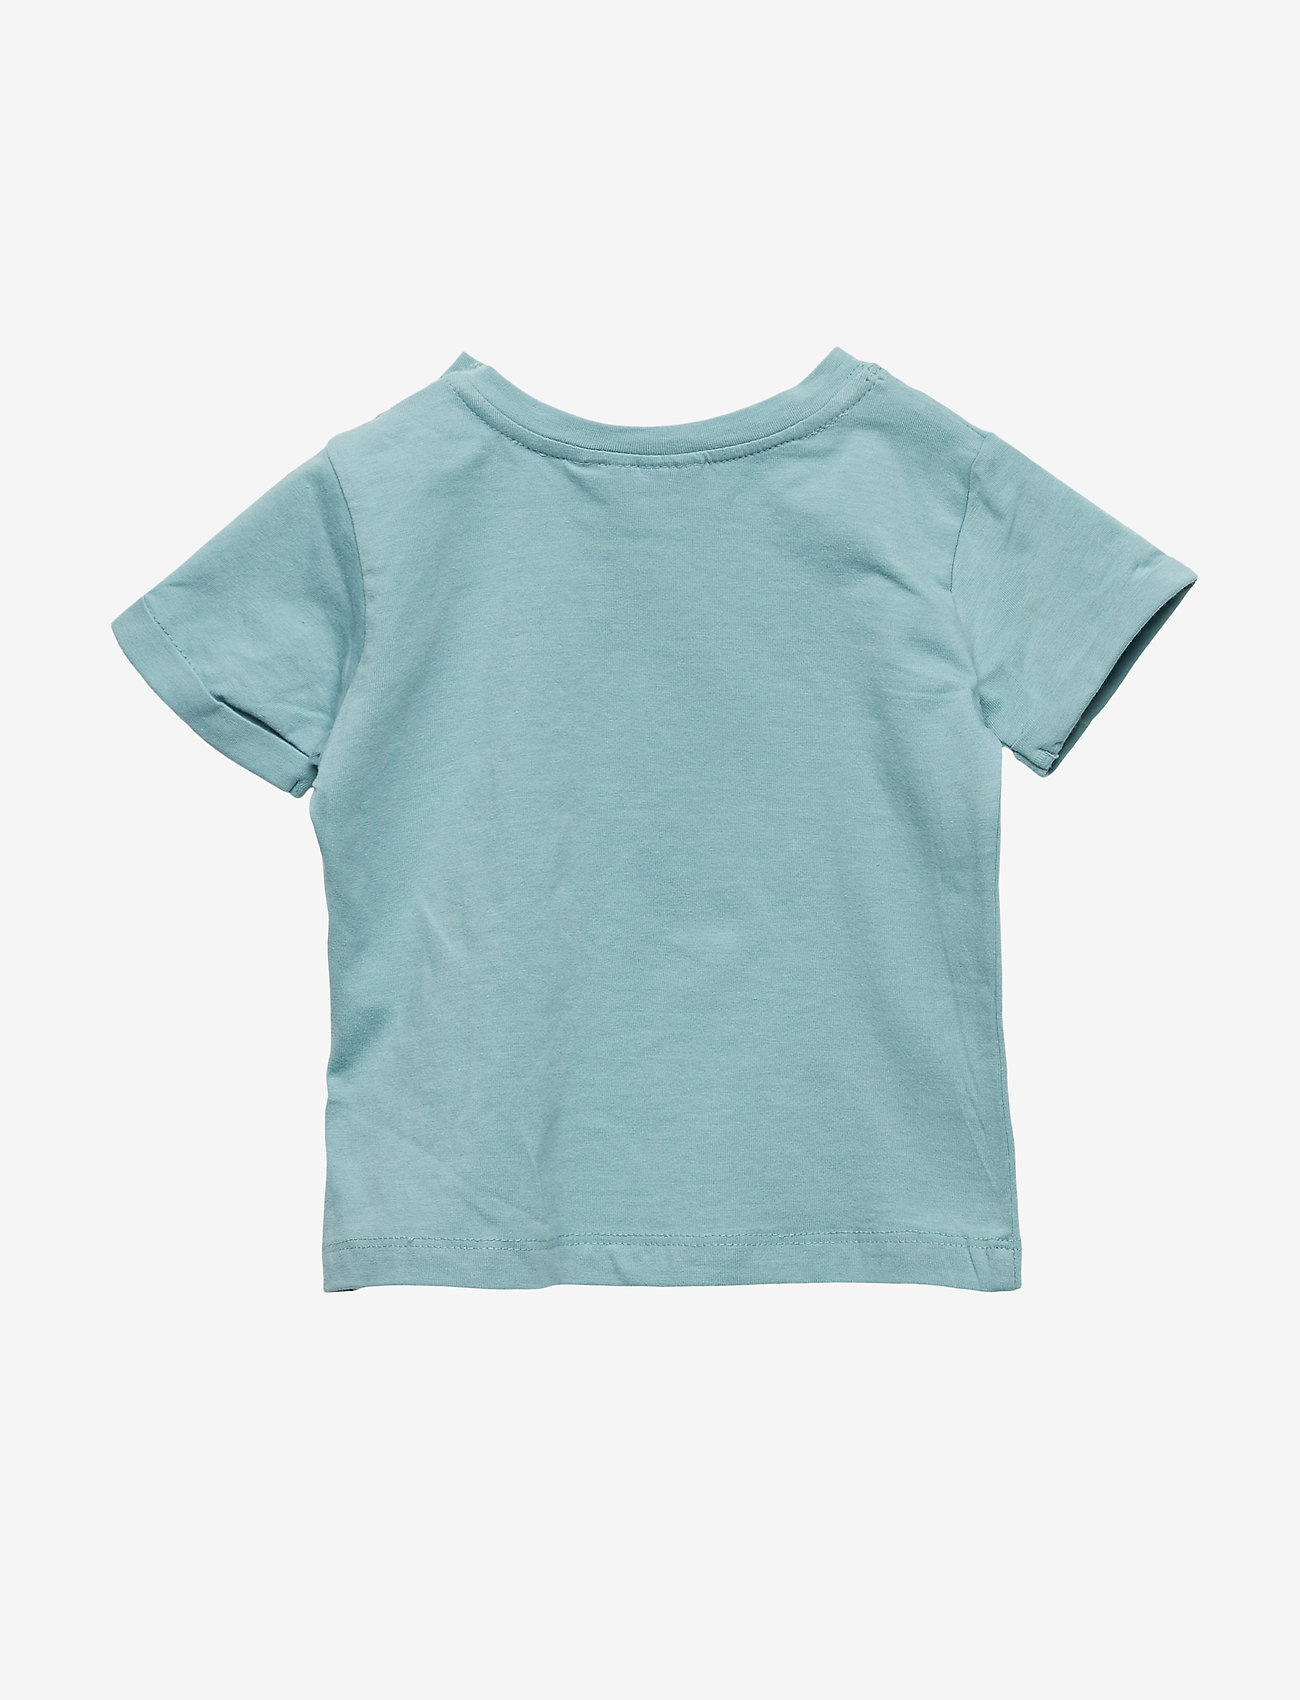 Noa Noa miniature - T-shirt - kortærmede t-shirts - mineral blue - 1